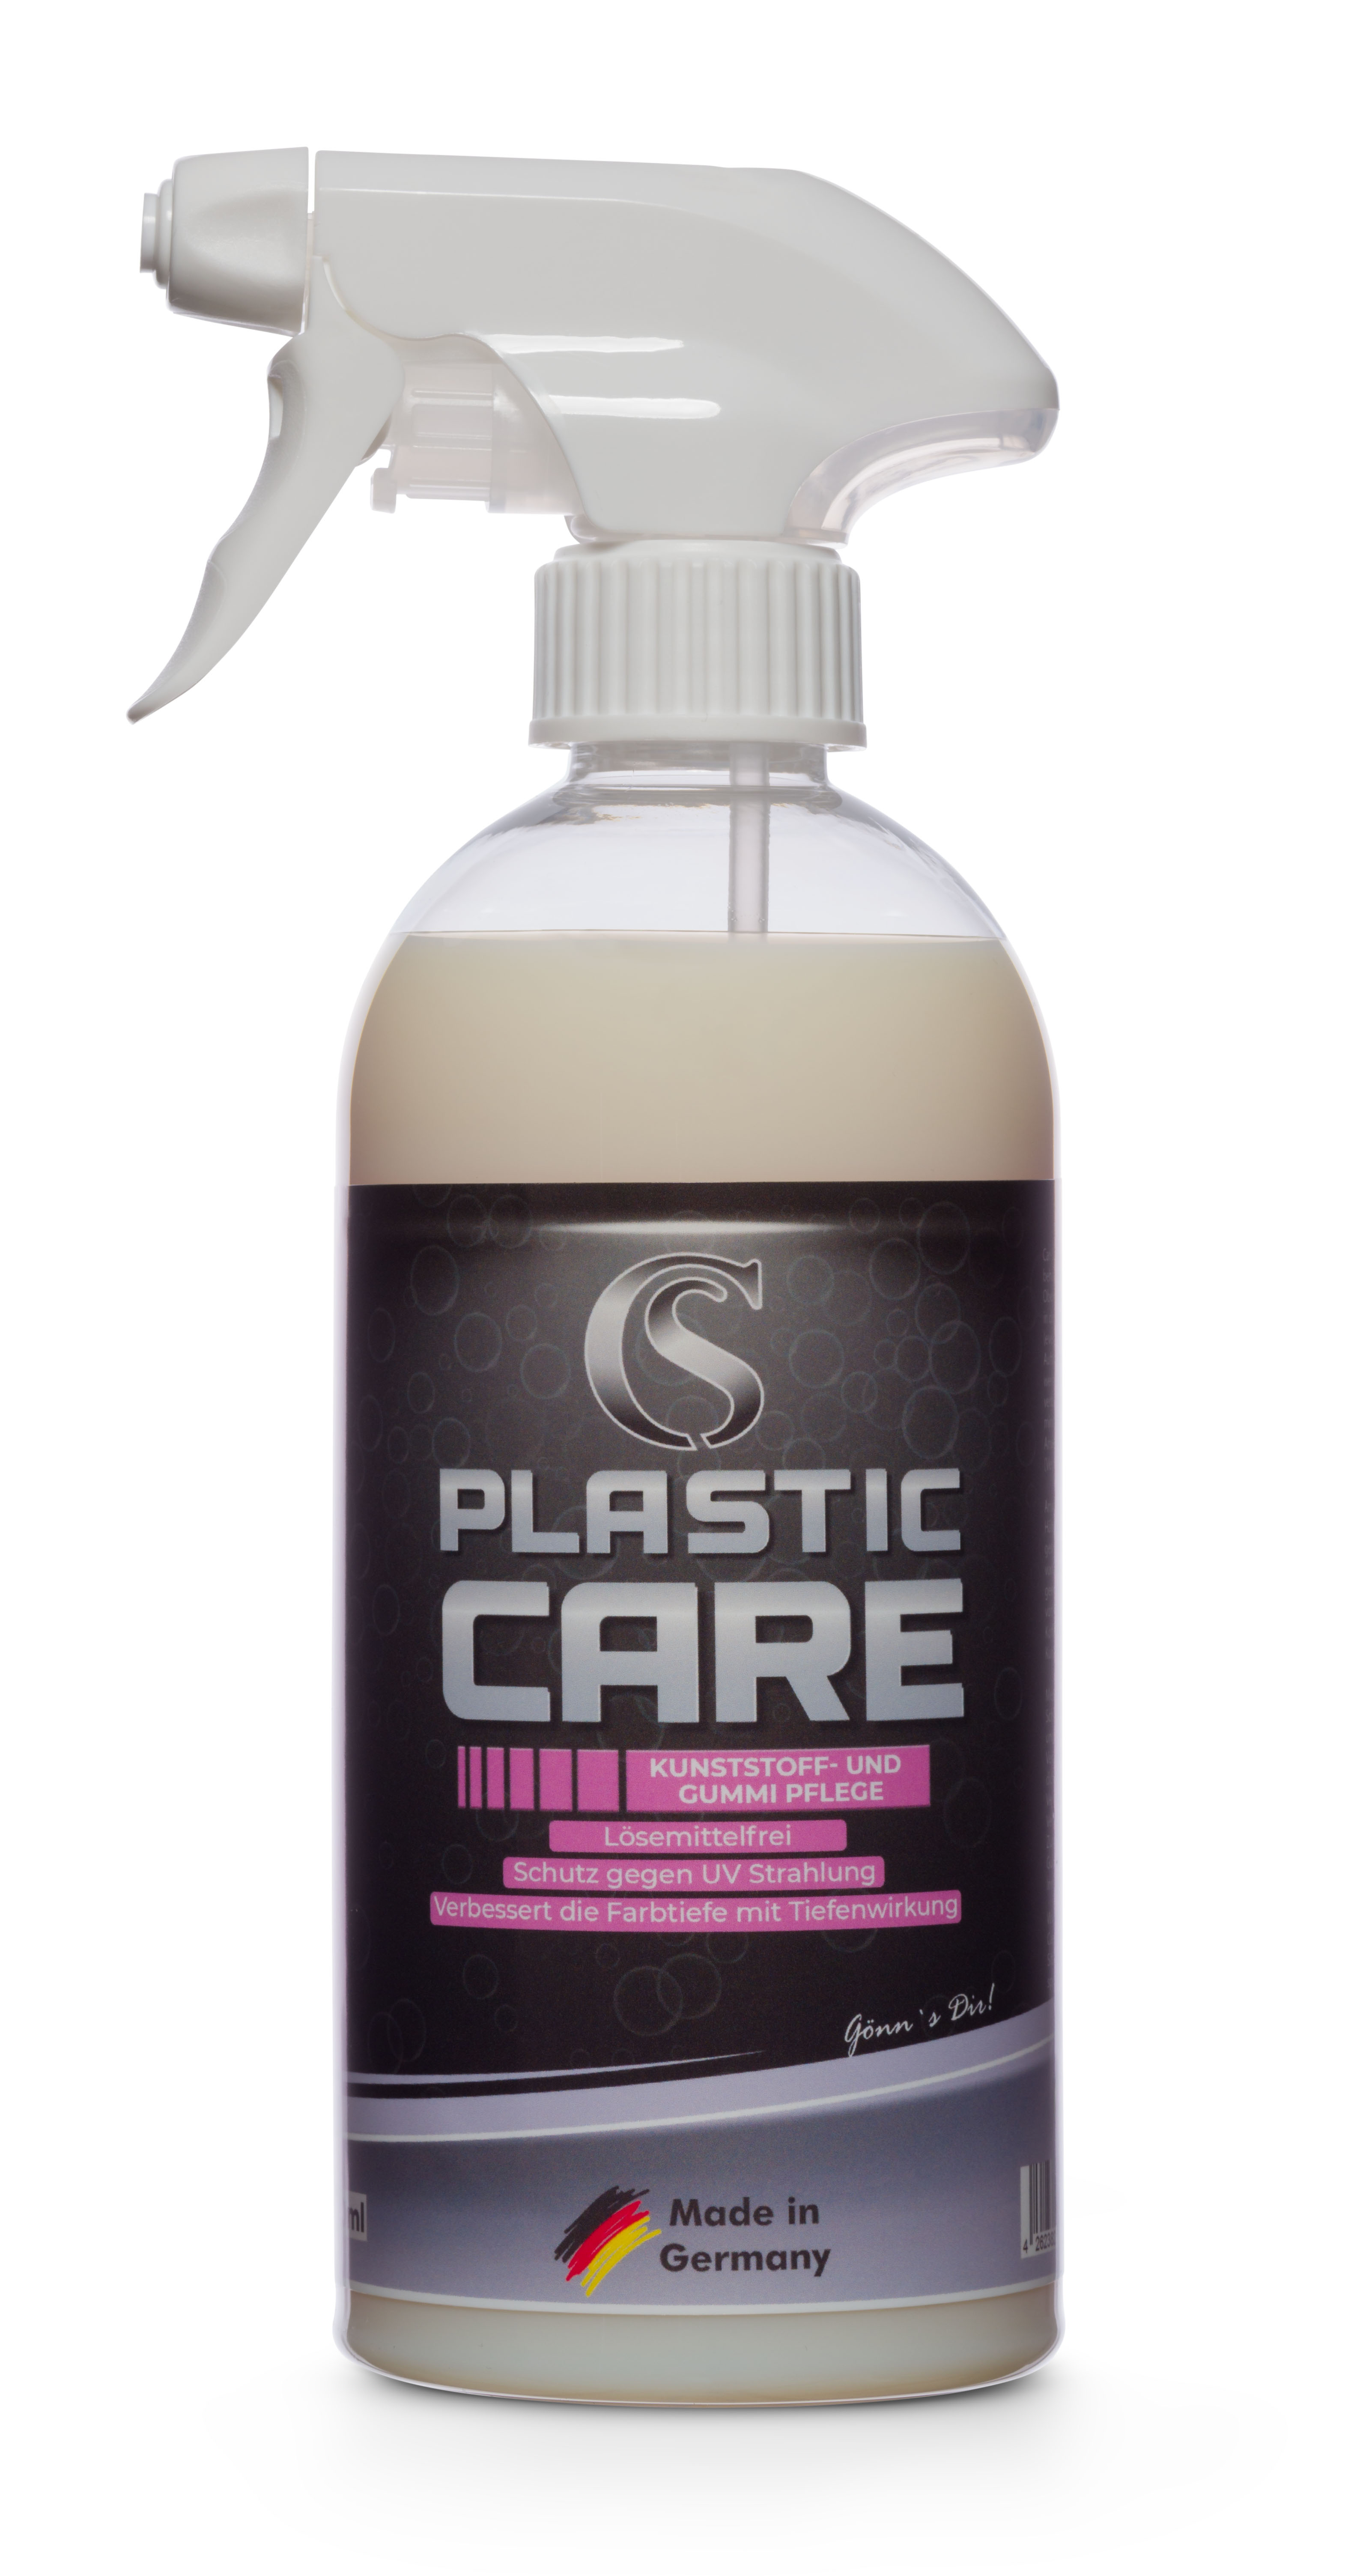 Car-Sense Plastic Care Hochwertige Pflege und Farbauffrischung für Gummi- und Kunststoffteile 